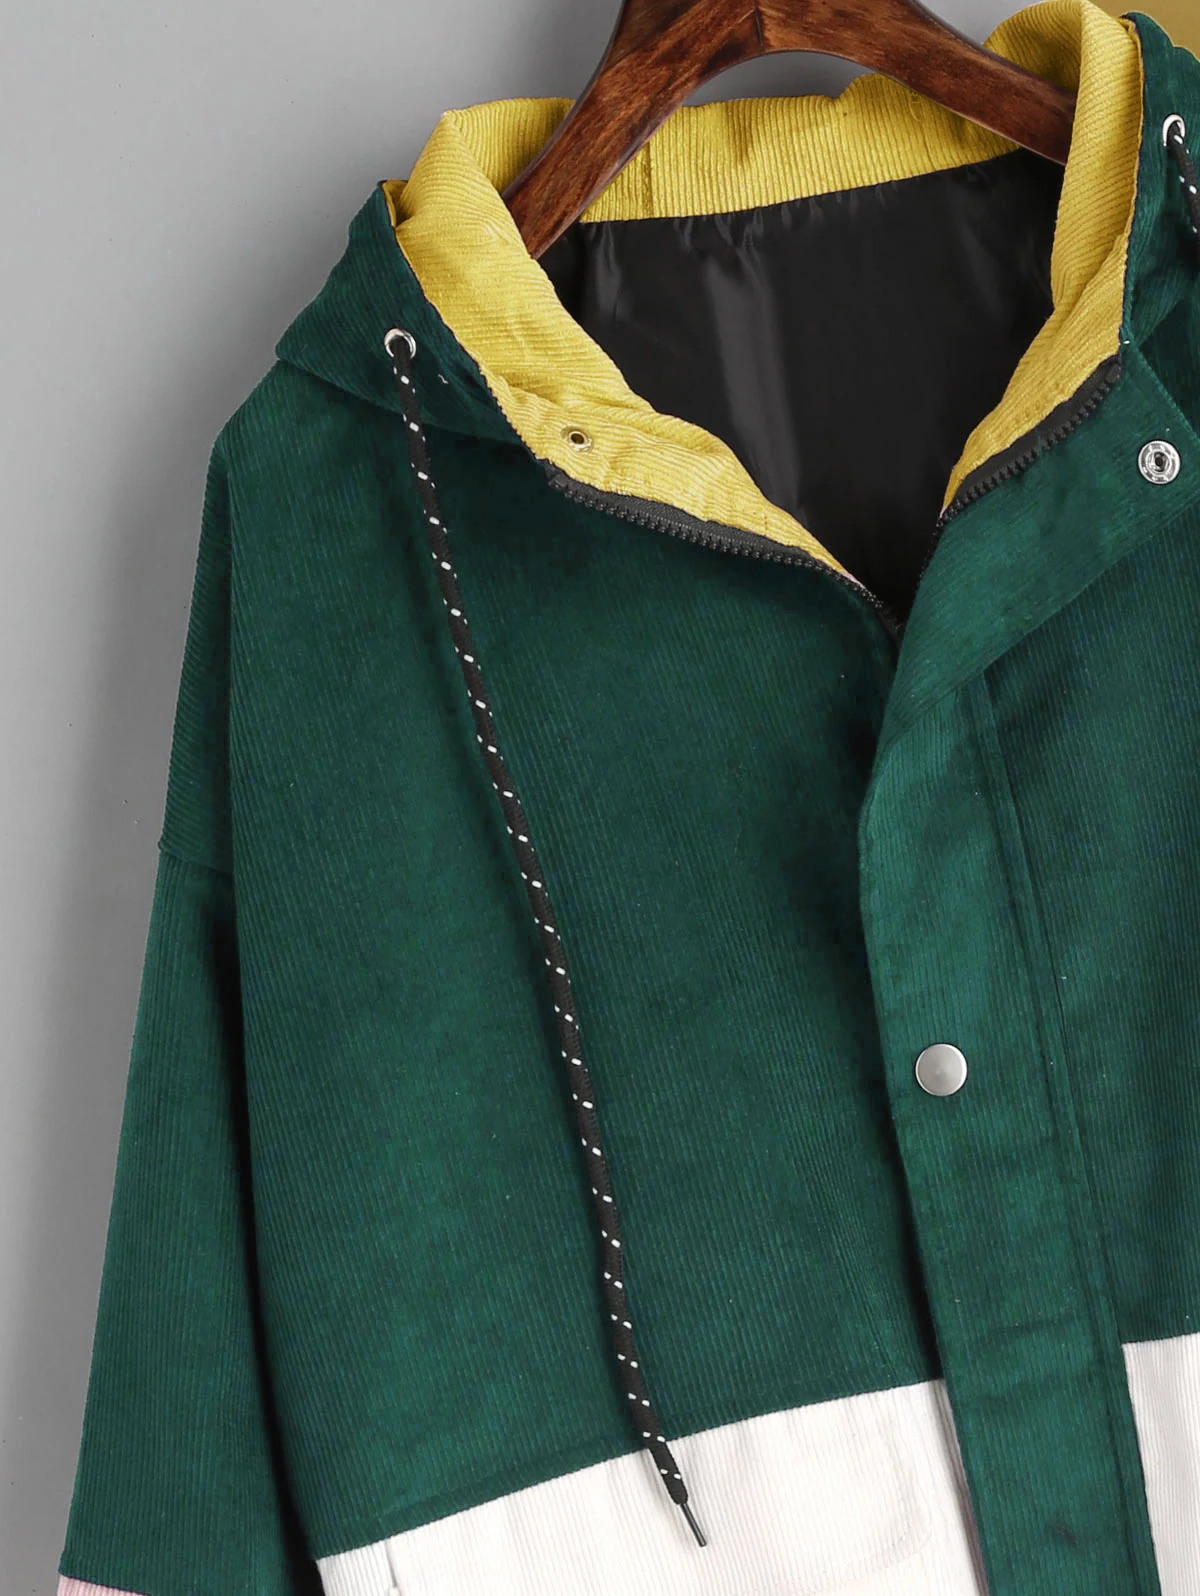 ZAFUL Цветной блок с капюшоном вельветовая куртка с полным рукавом лоскутное шикарные куртки уличная одежда женские топы пальто осень зима